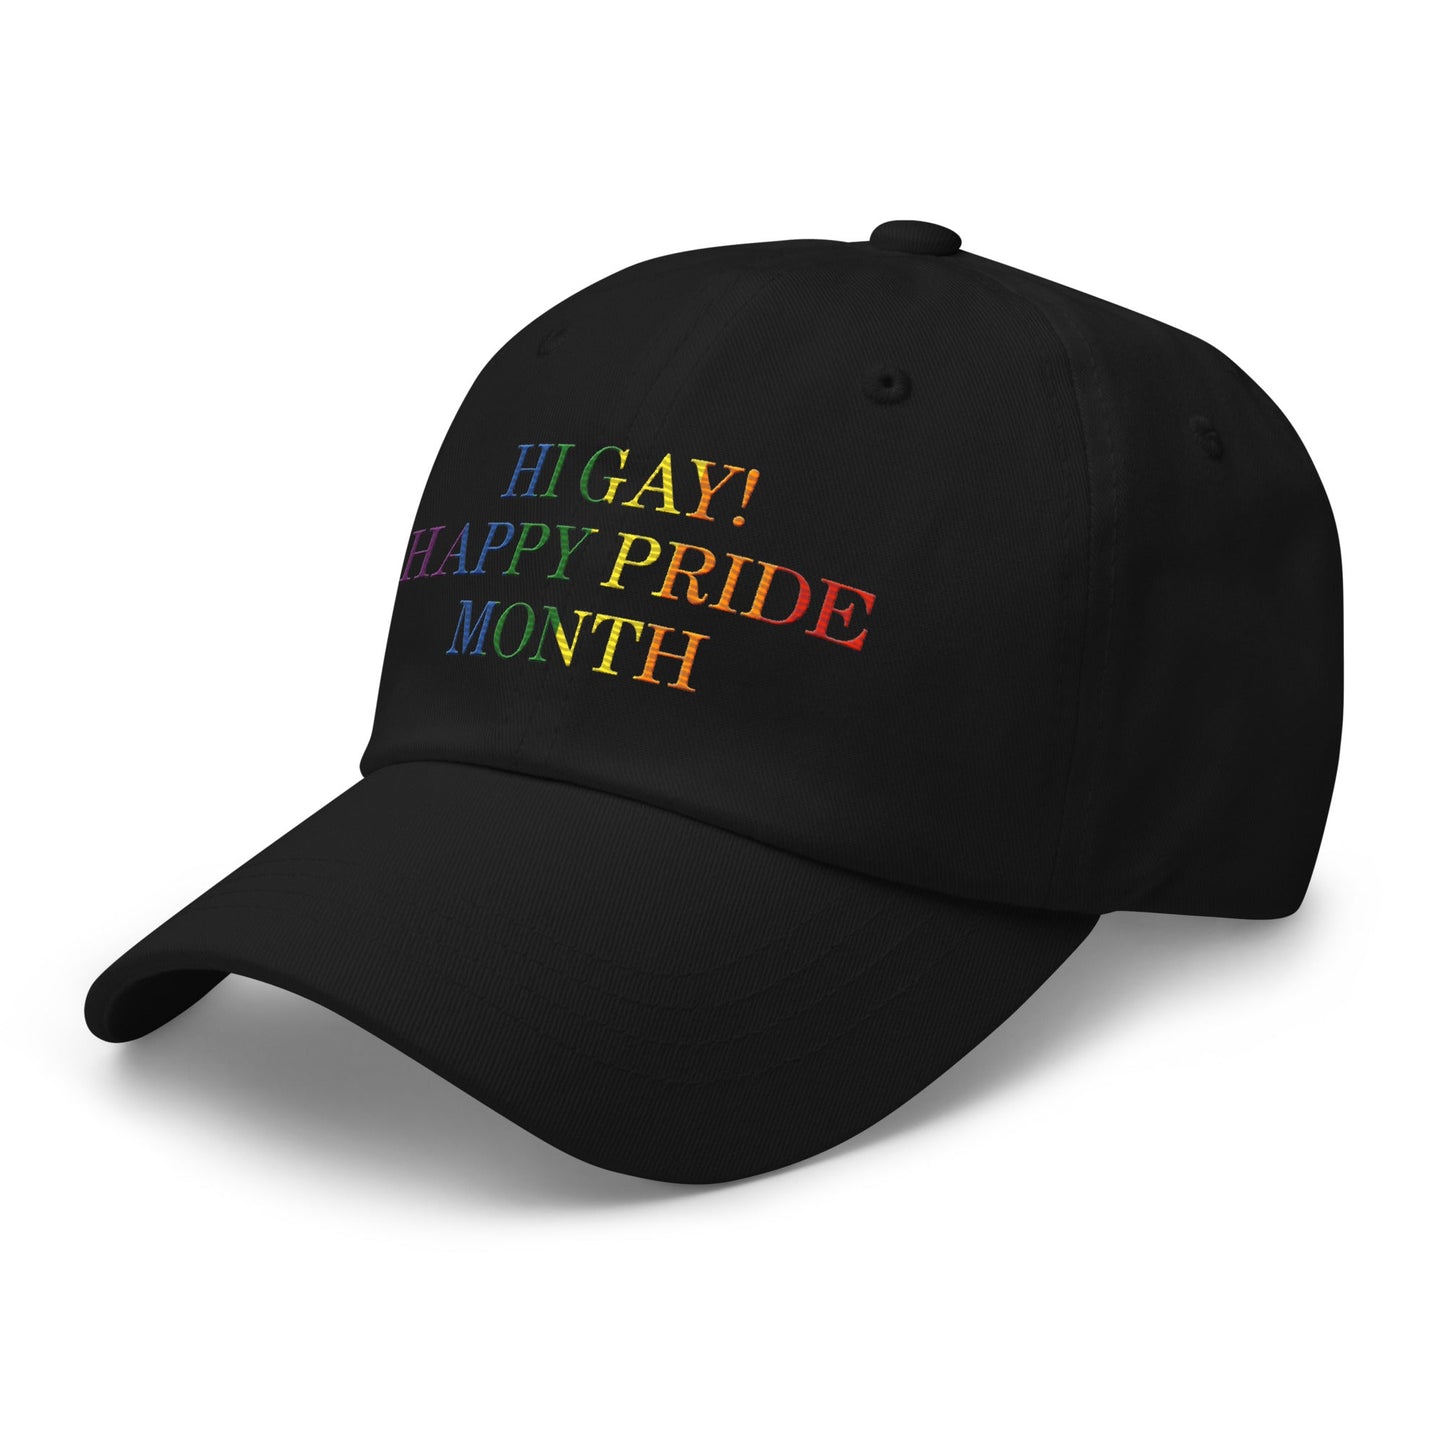 Hi Gay! Happy Pride Month Dad Hat Black